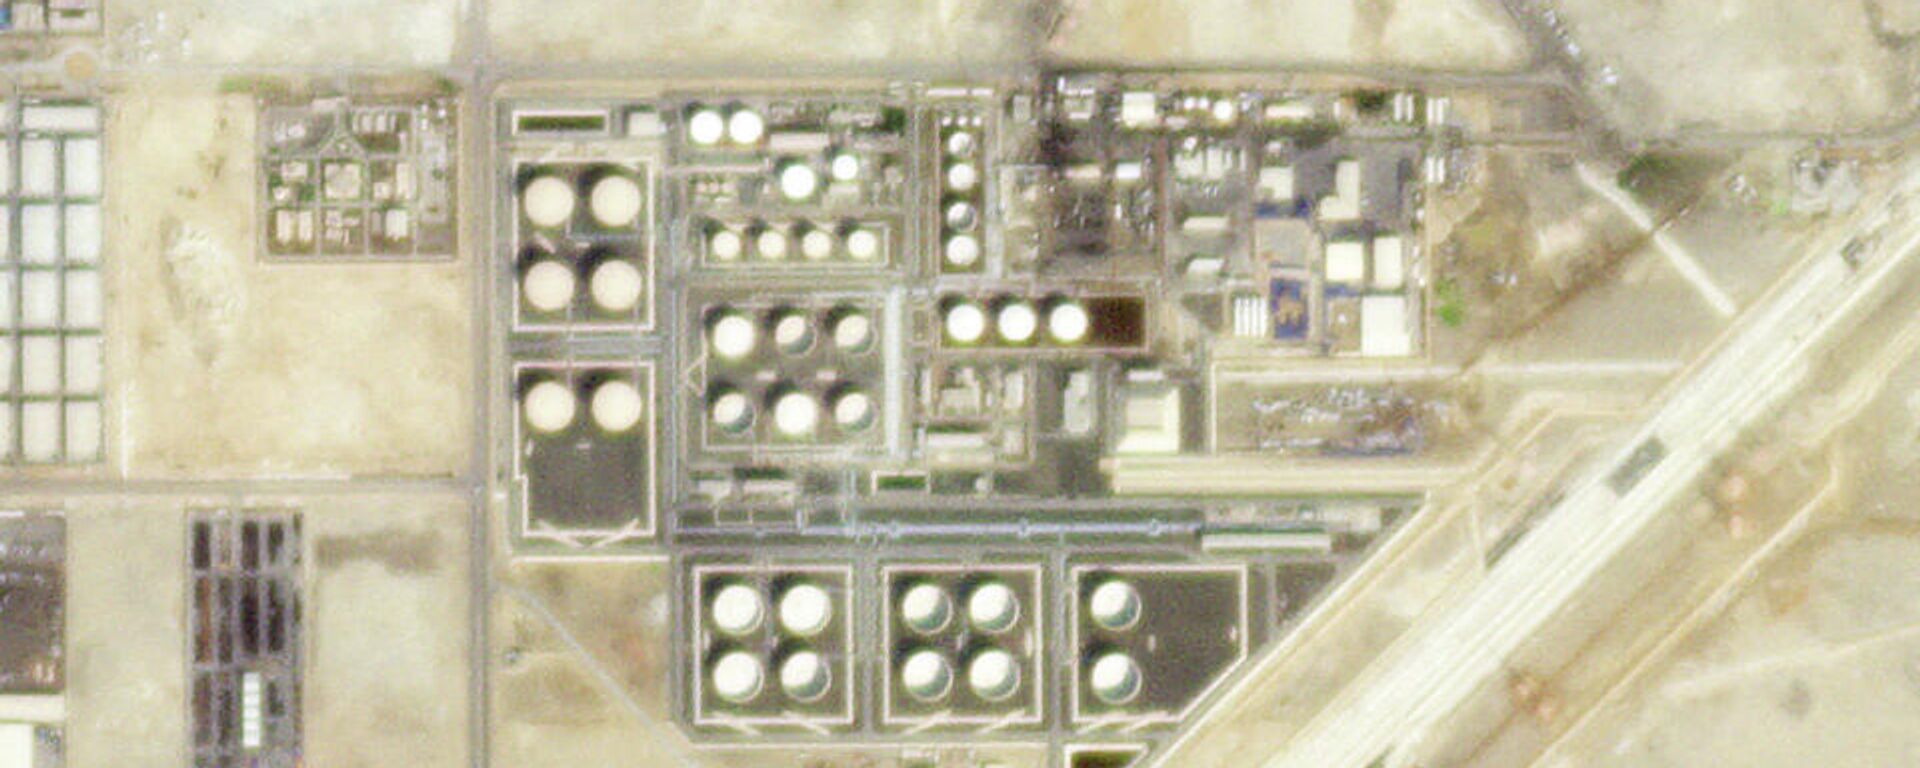 صورة بالأقمار الصناعية للمطقة التي هاجمتها أنصار الله في أبو ظبي 15 يناير 2022 - سبوتنيك عربي, 1920, 23.01.2022